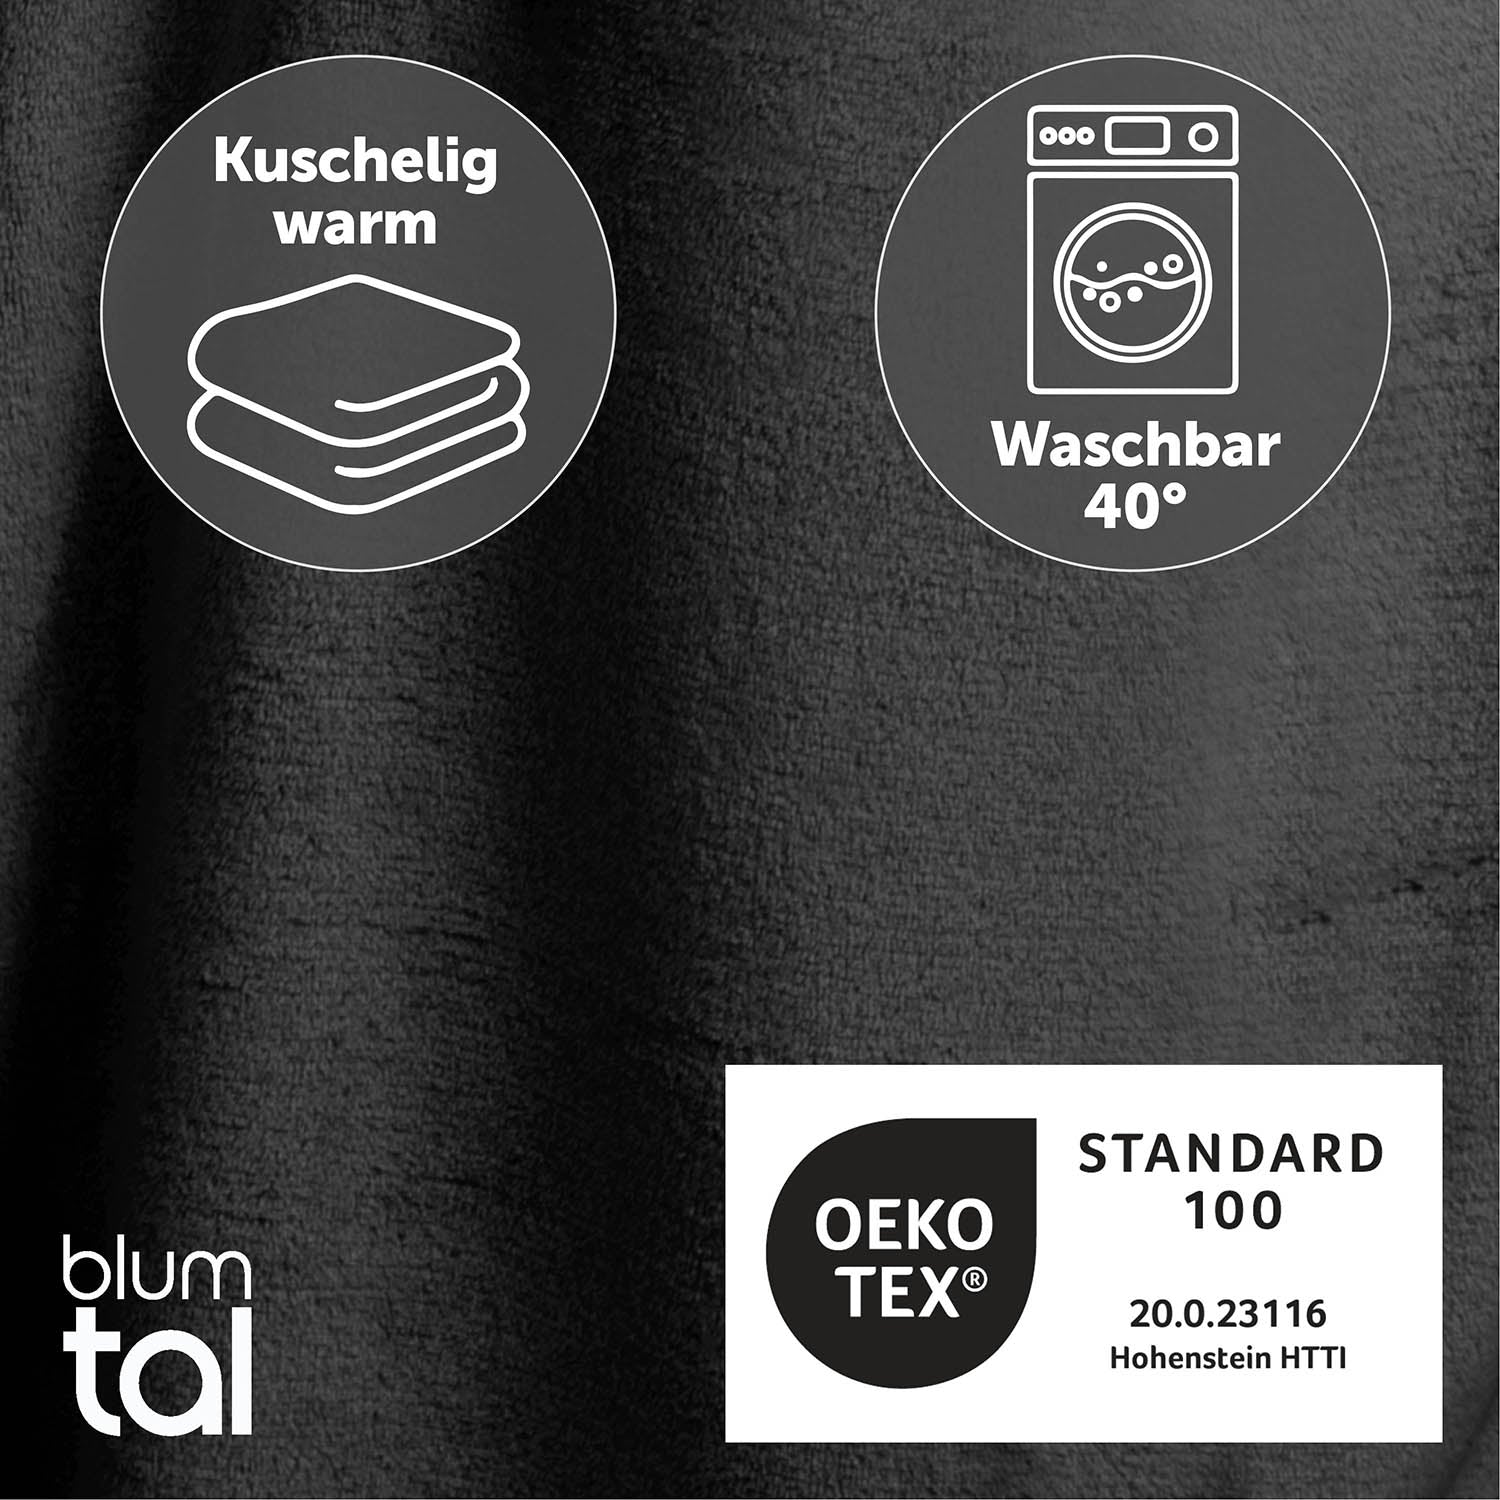 Detailansicht des anthrazit flauschigen Stoffes mit Symbolen für Kuschelwärme und Waschbarkeit bei 40 Grad sowie OEKO-TEX Standard 100 Zertifizierung.